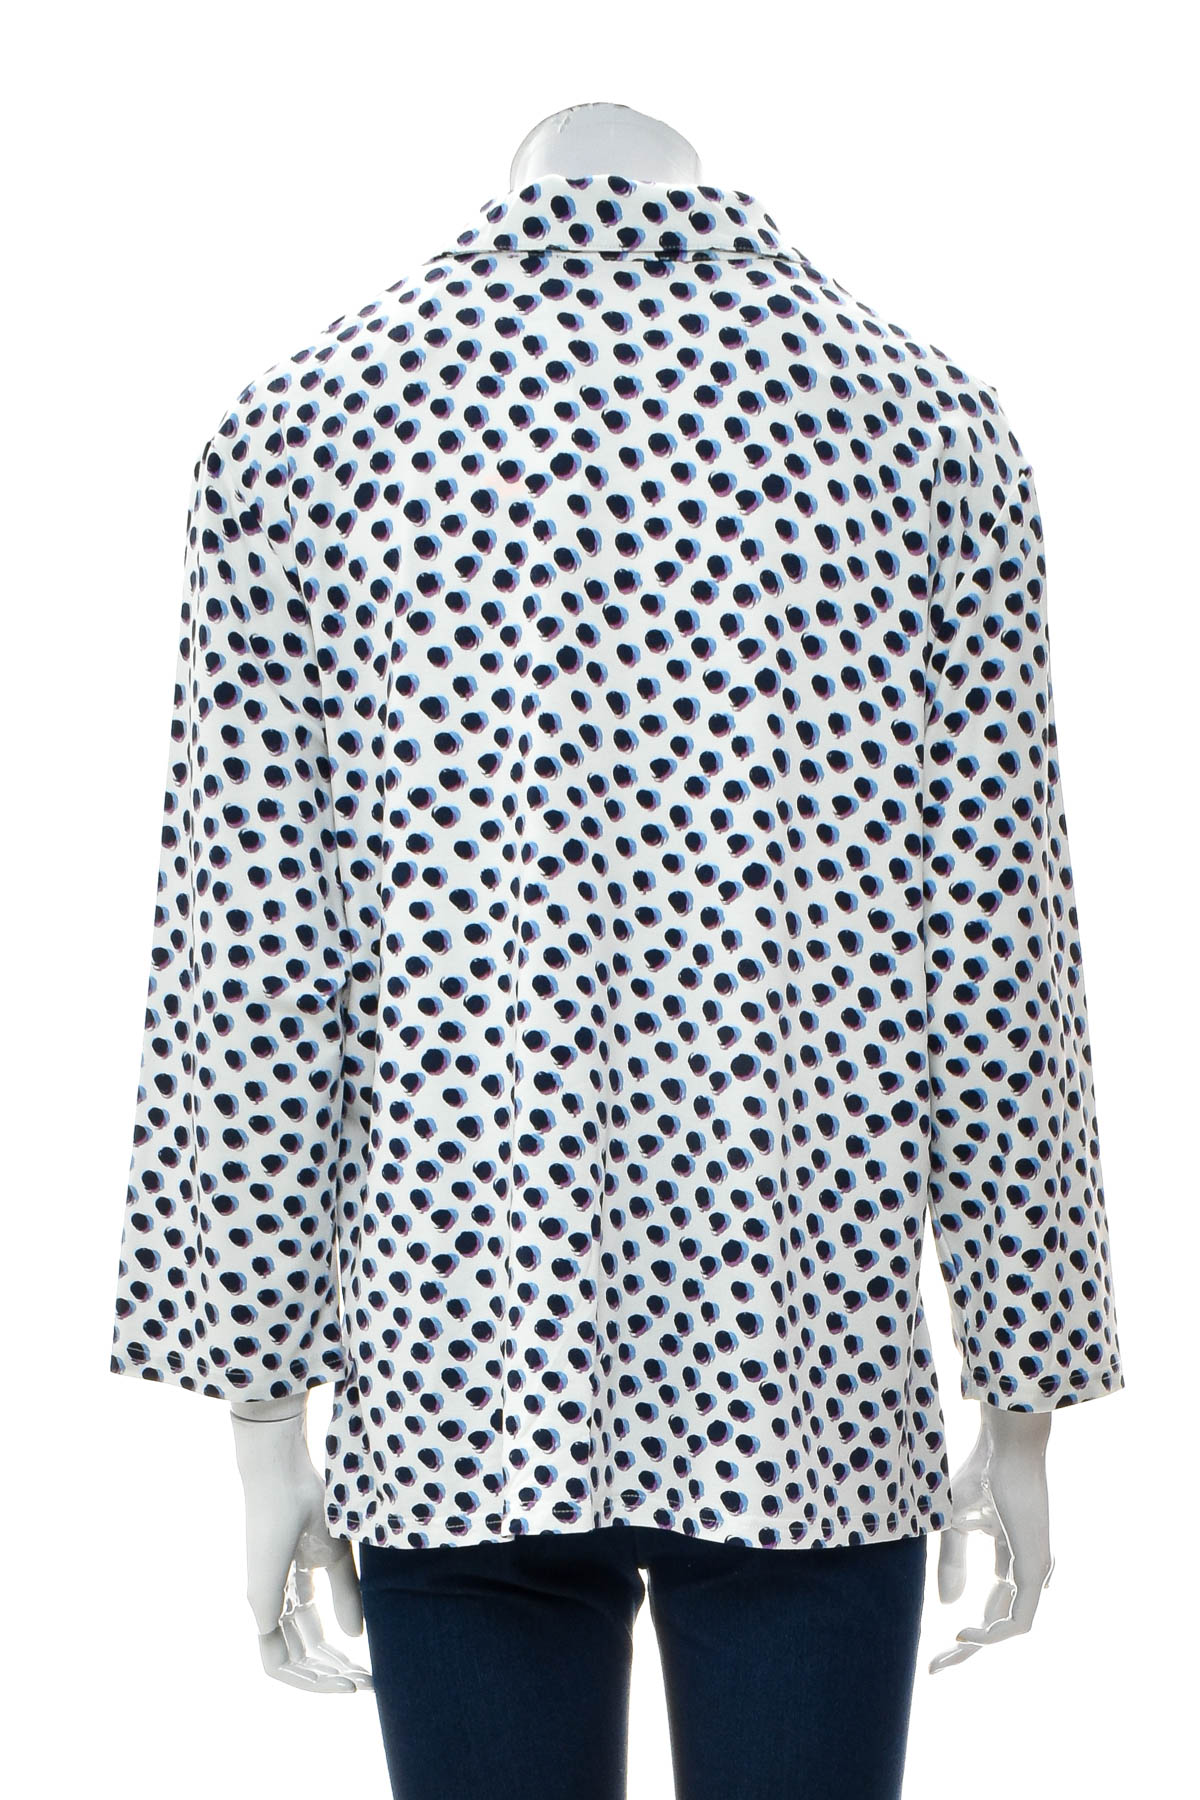 Women's blouse - Claude Arielle - 1